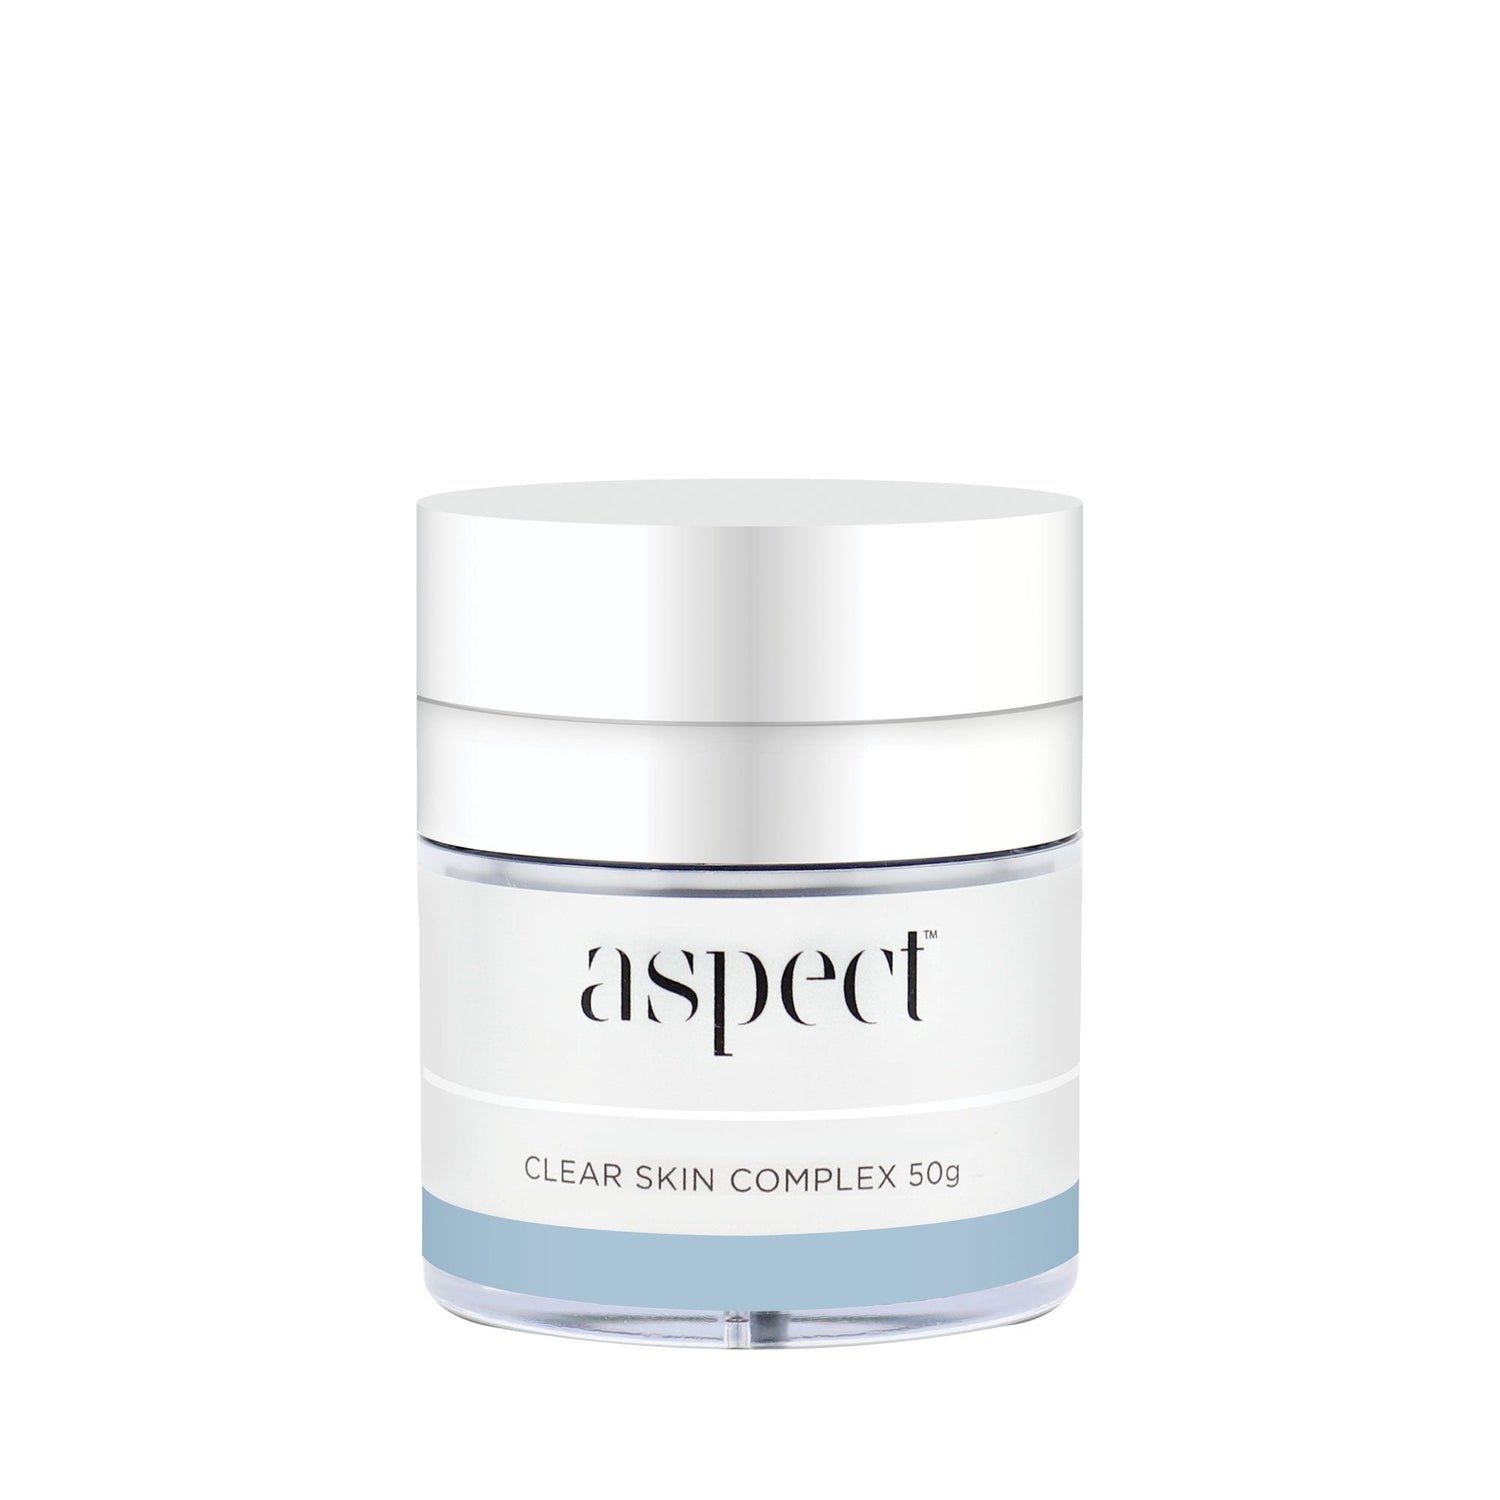 Clear Skin Complex 50g